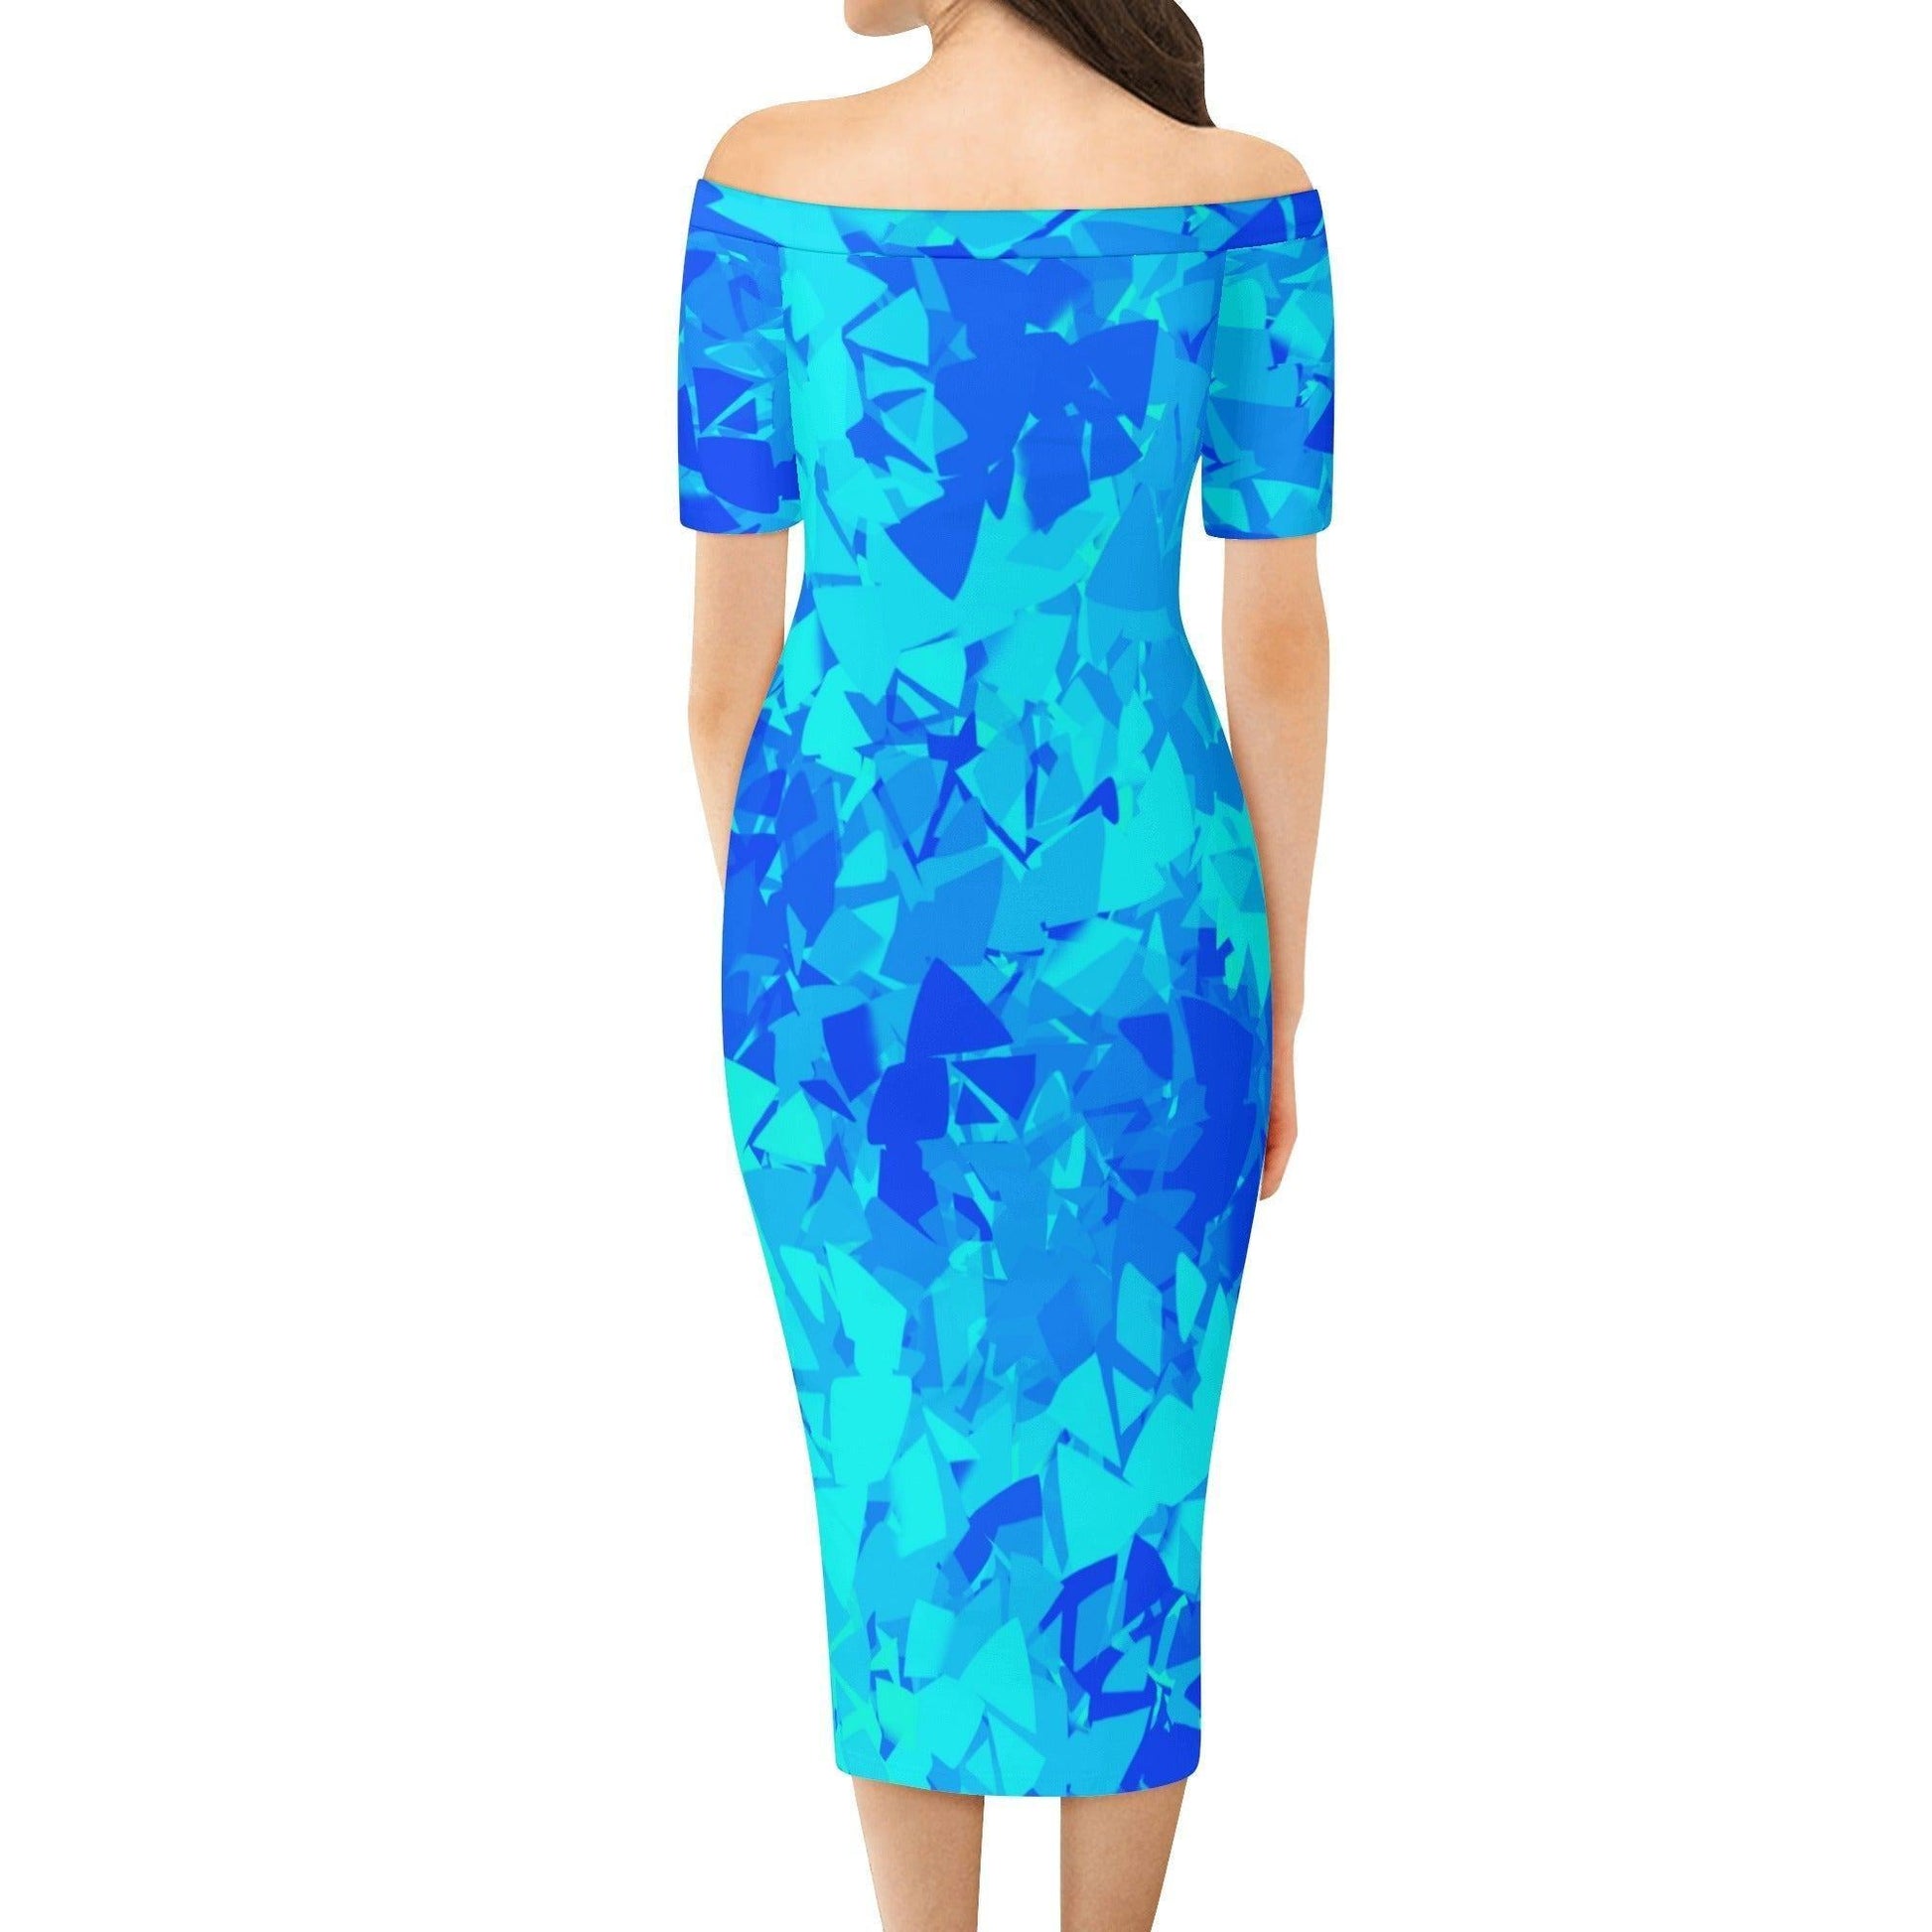 Blue Crystal Off-Shoulder-Kleid -- Blue Crystal Off-Shoulder-Kleid - undefined Off-Shoulder-Kleid | JLR Design